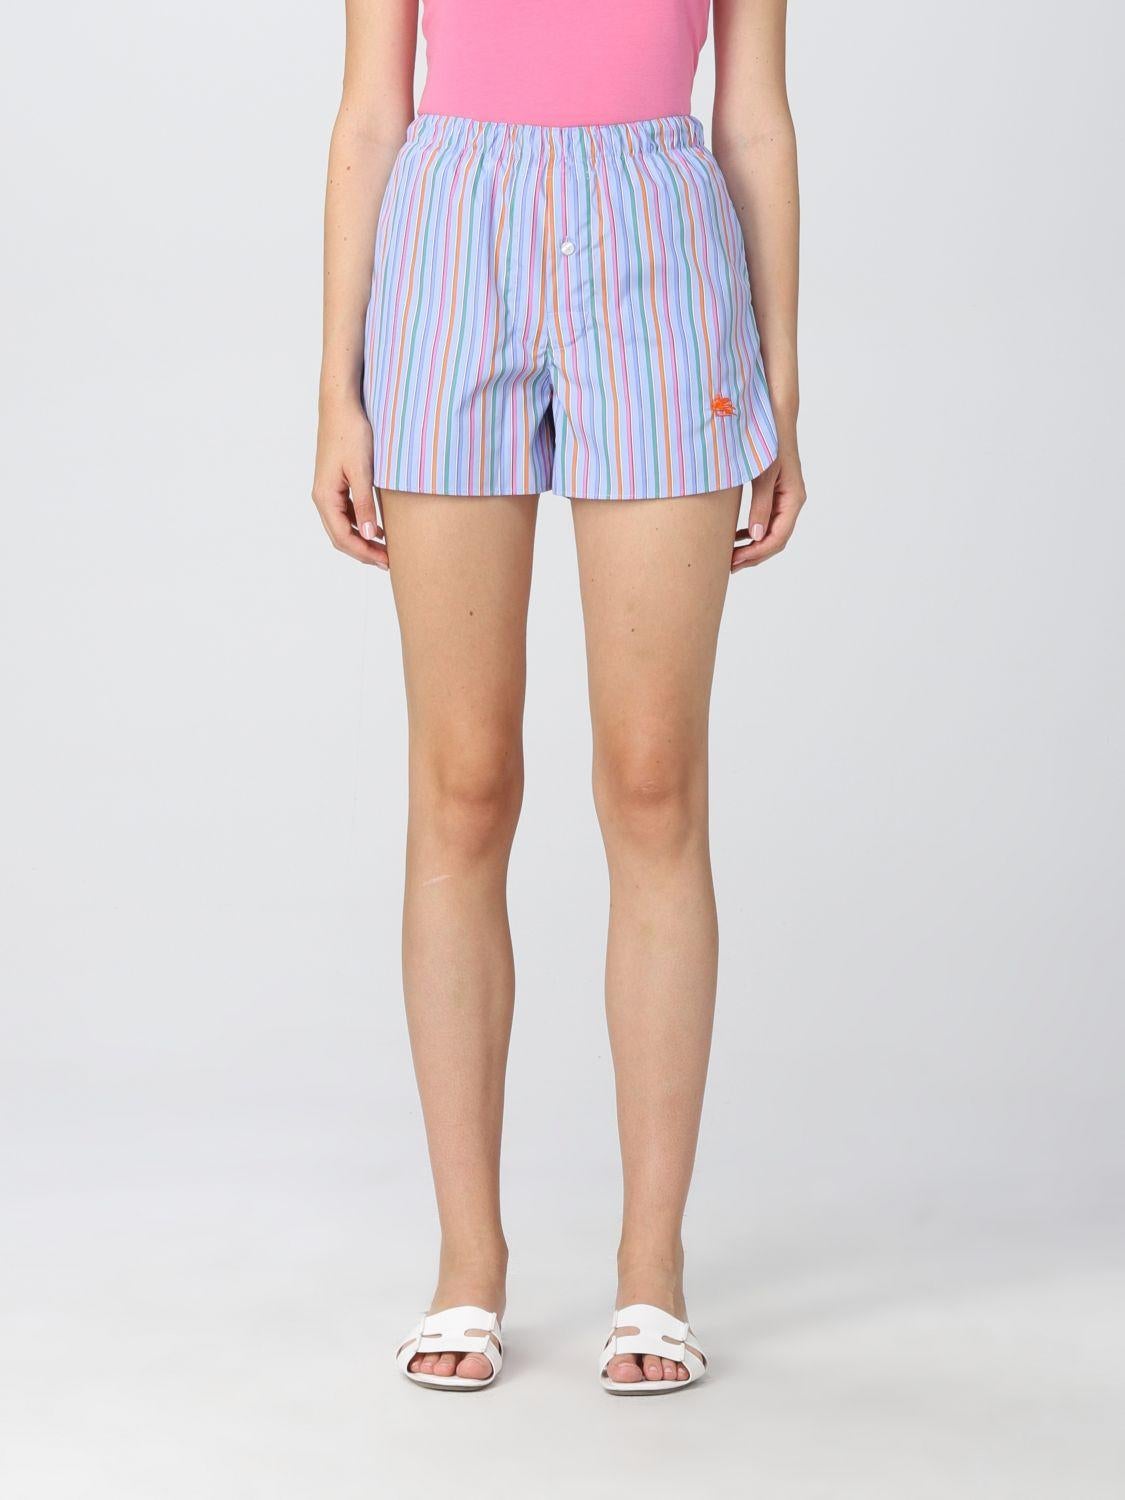 Diese farbenfrohen Shorts von Etro sind aus knackiger Baumwollpopeline gefertigt. Sie sind mit einer Knopfleiste und einer Logostickerei verziert und haben einen bequemen Gummibund. Brandneu, nie getragen, mit Etiketten.
Pflegehinweise: Kalt in der